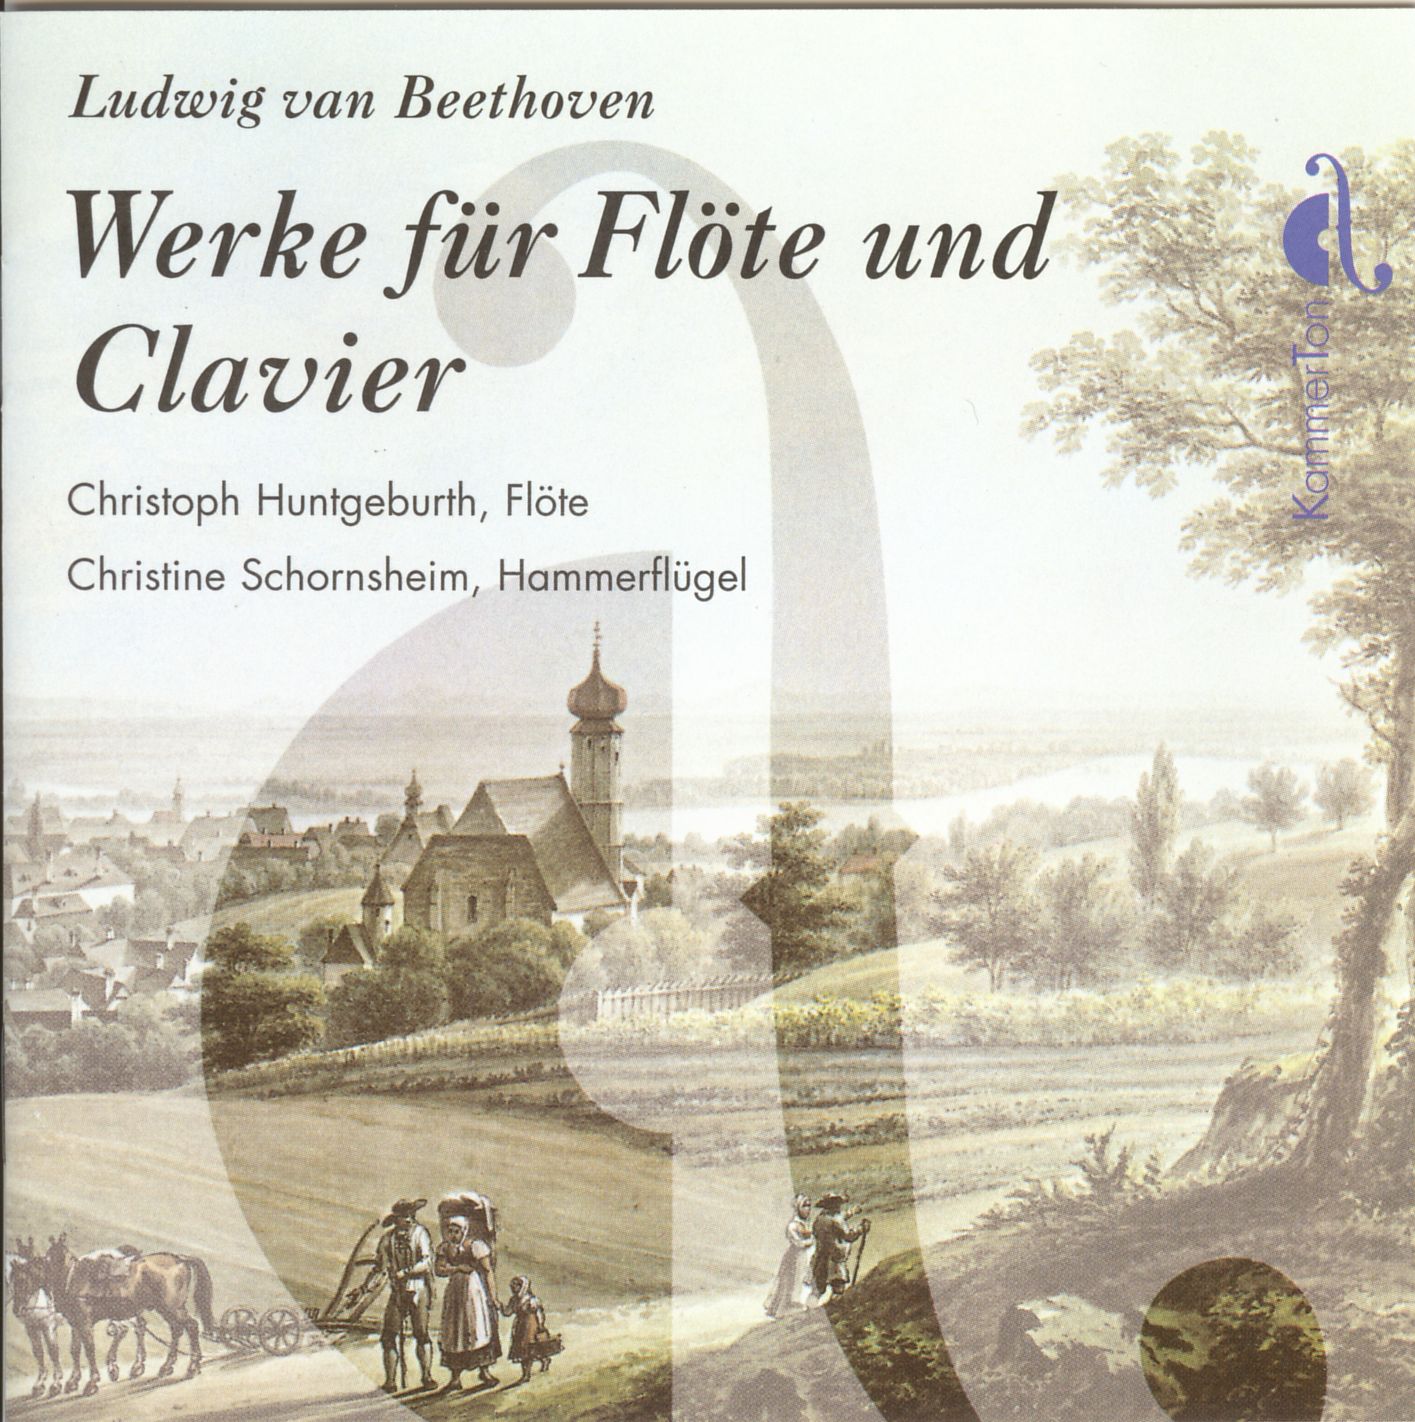 Ludwig van Beethoven - Werke für Flöte und Clavier